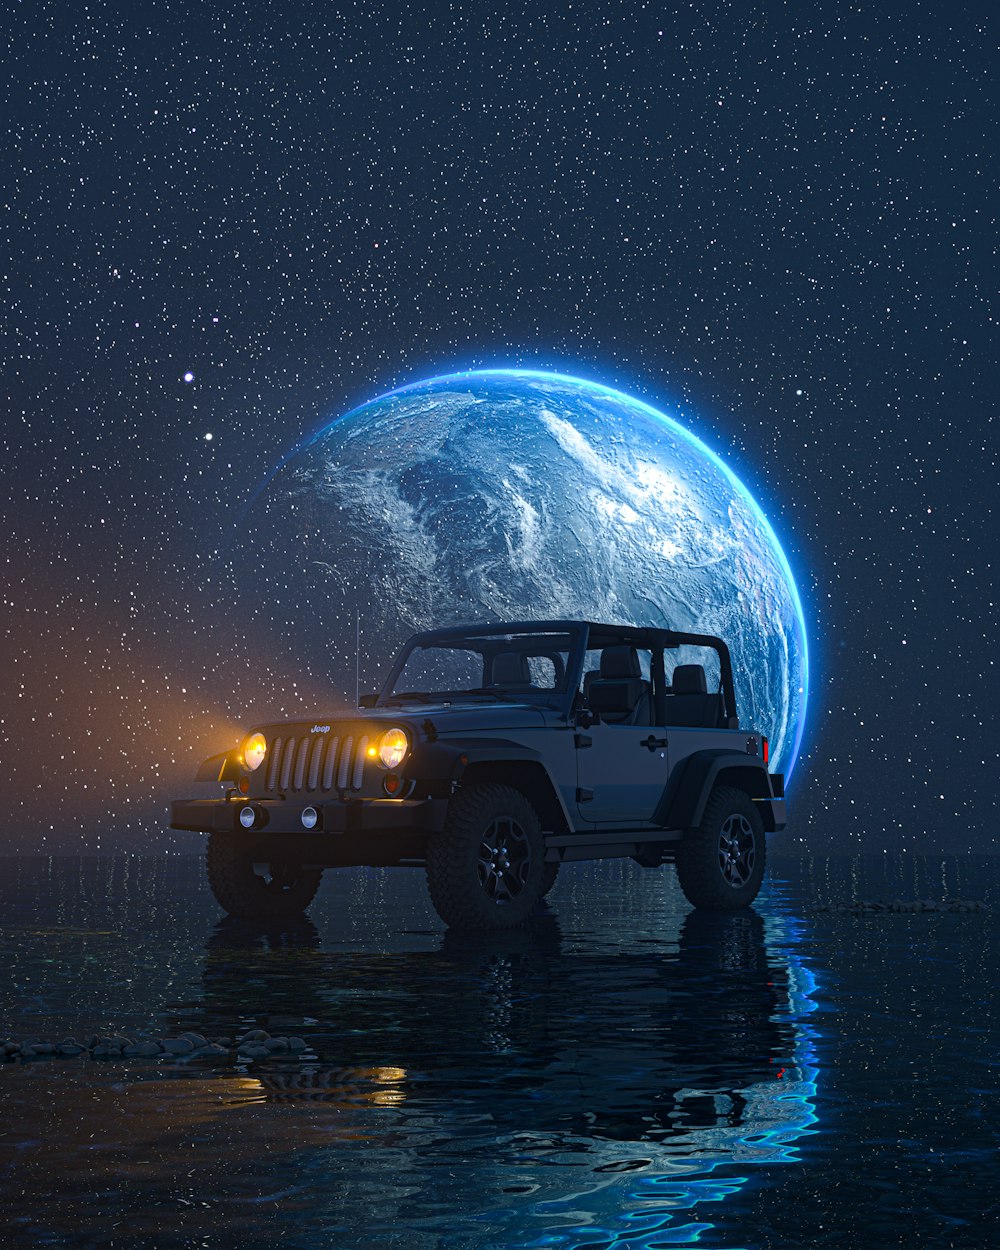 Un jeep está estacionado frente a la tierra